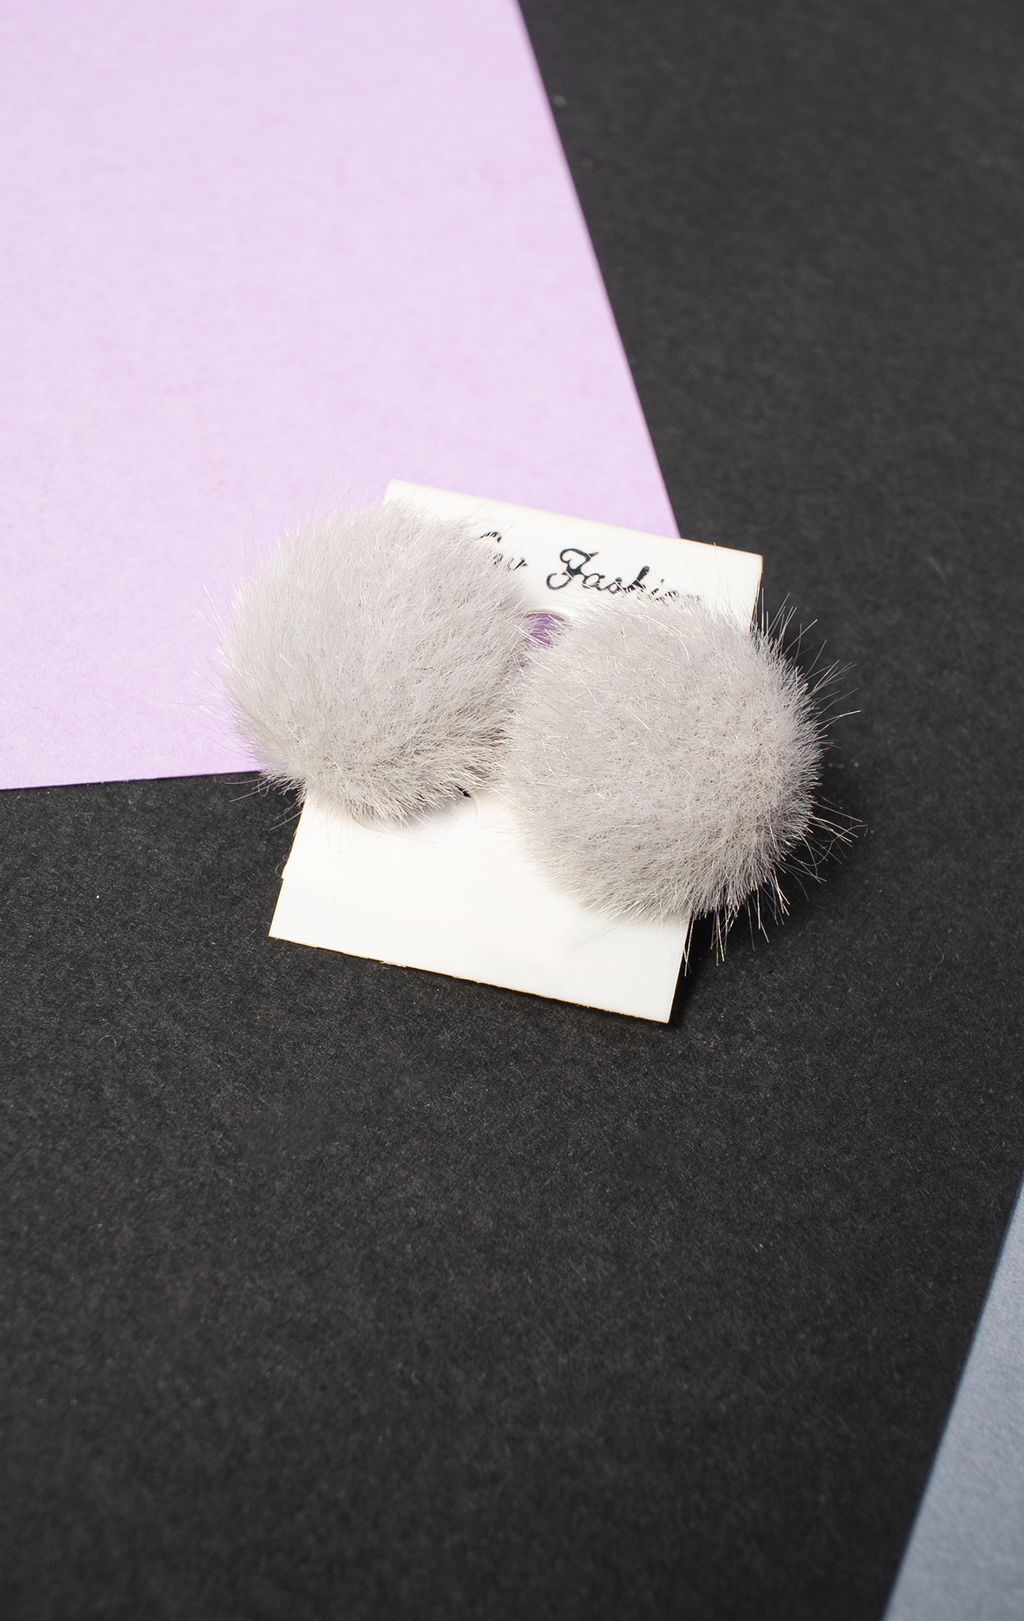 NEW FASHION EARRINGS - Grey Faux fur hald bubble